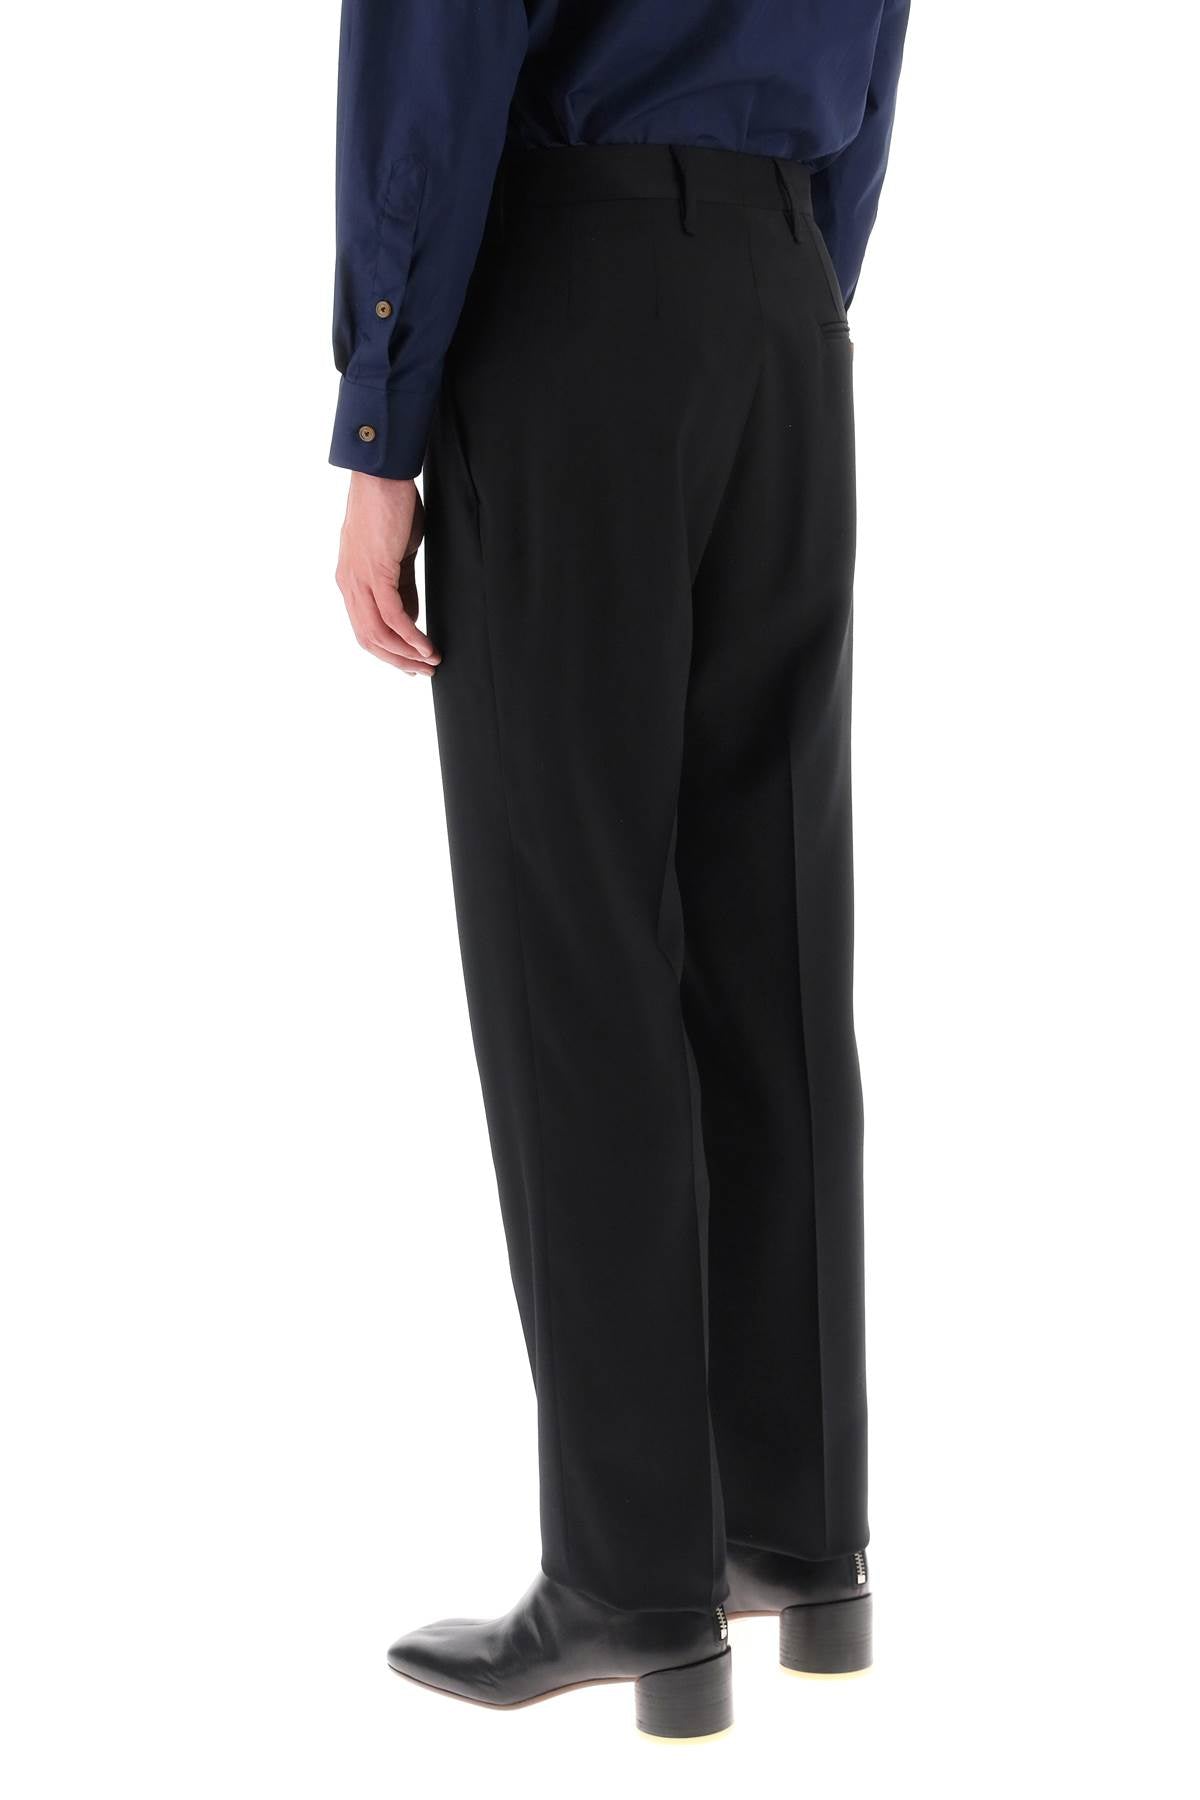 Vivienne westwood 'cruise' pants in lightweight wool-2